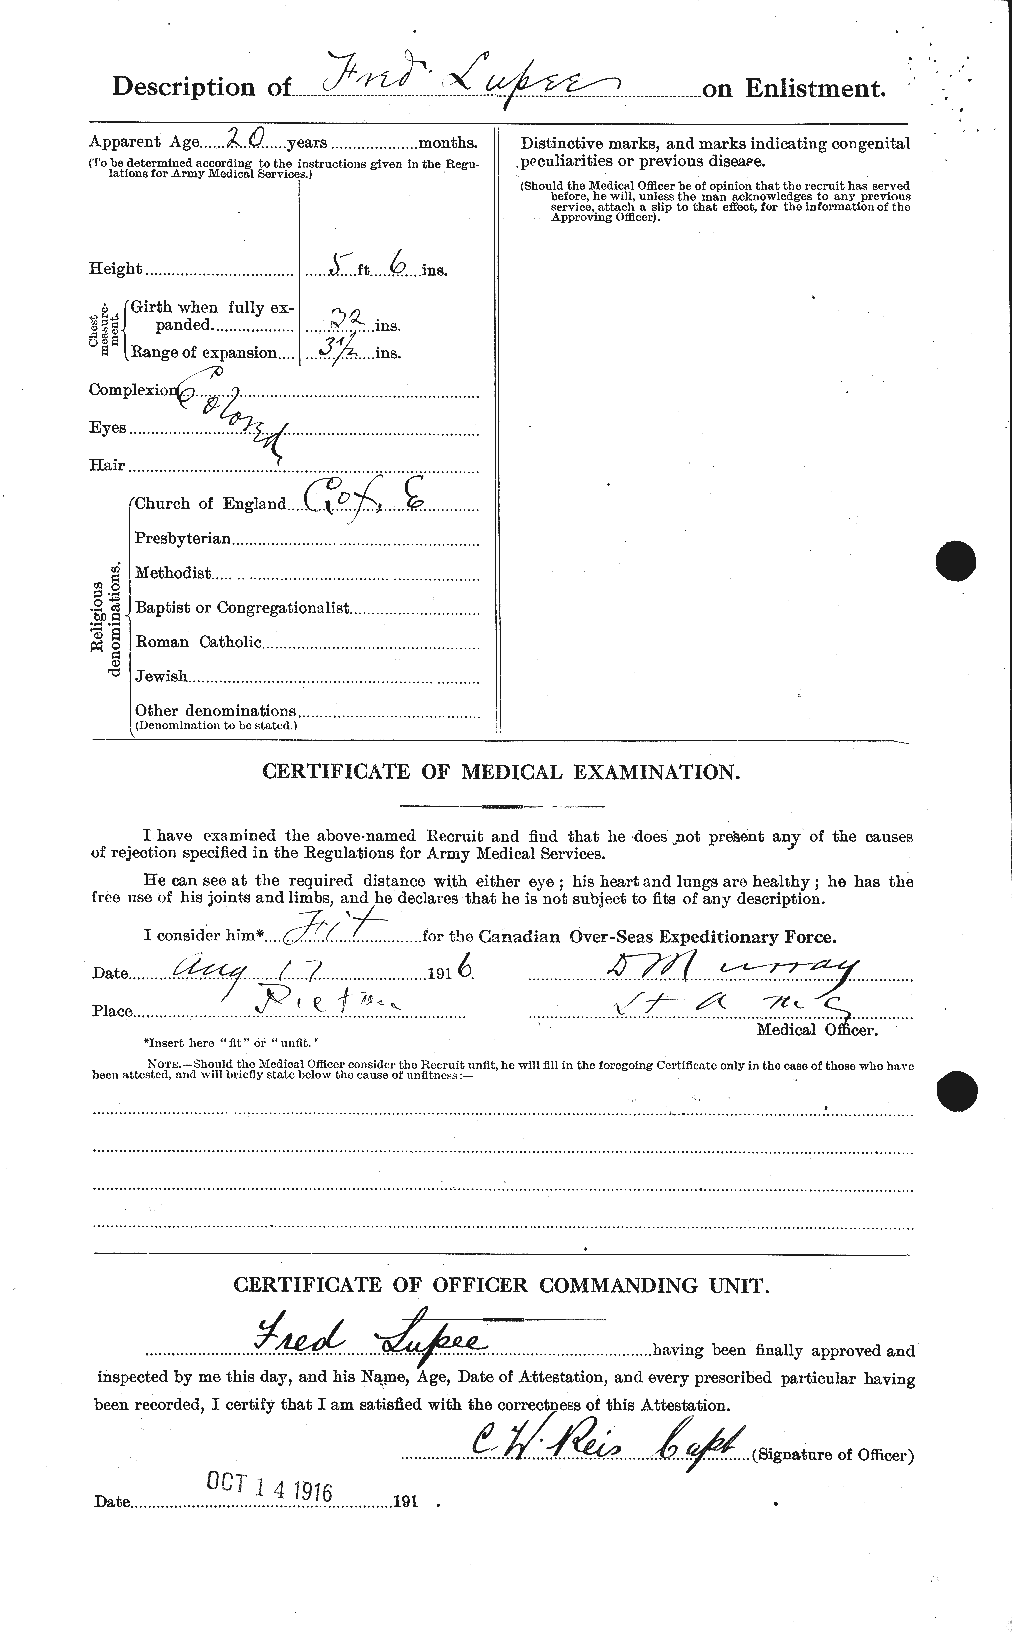 Dossiers du Personnel de la Première Guerre mondiale - CEC 473498b